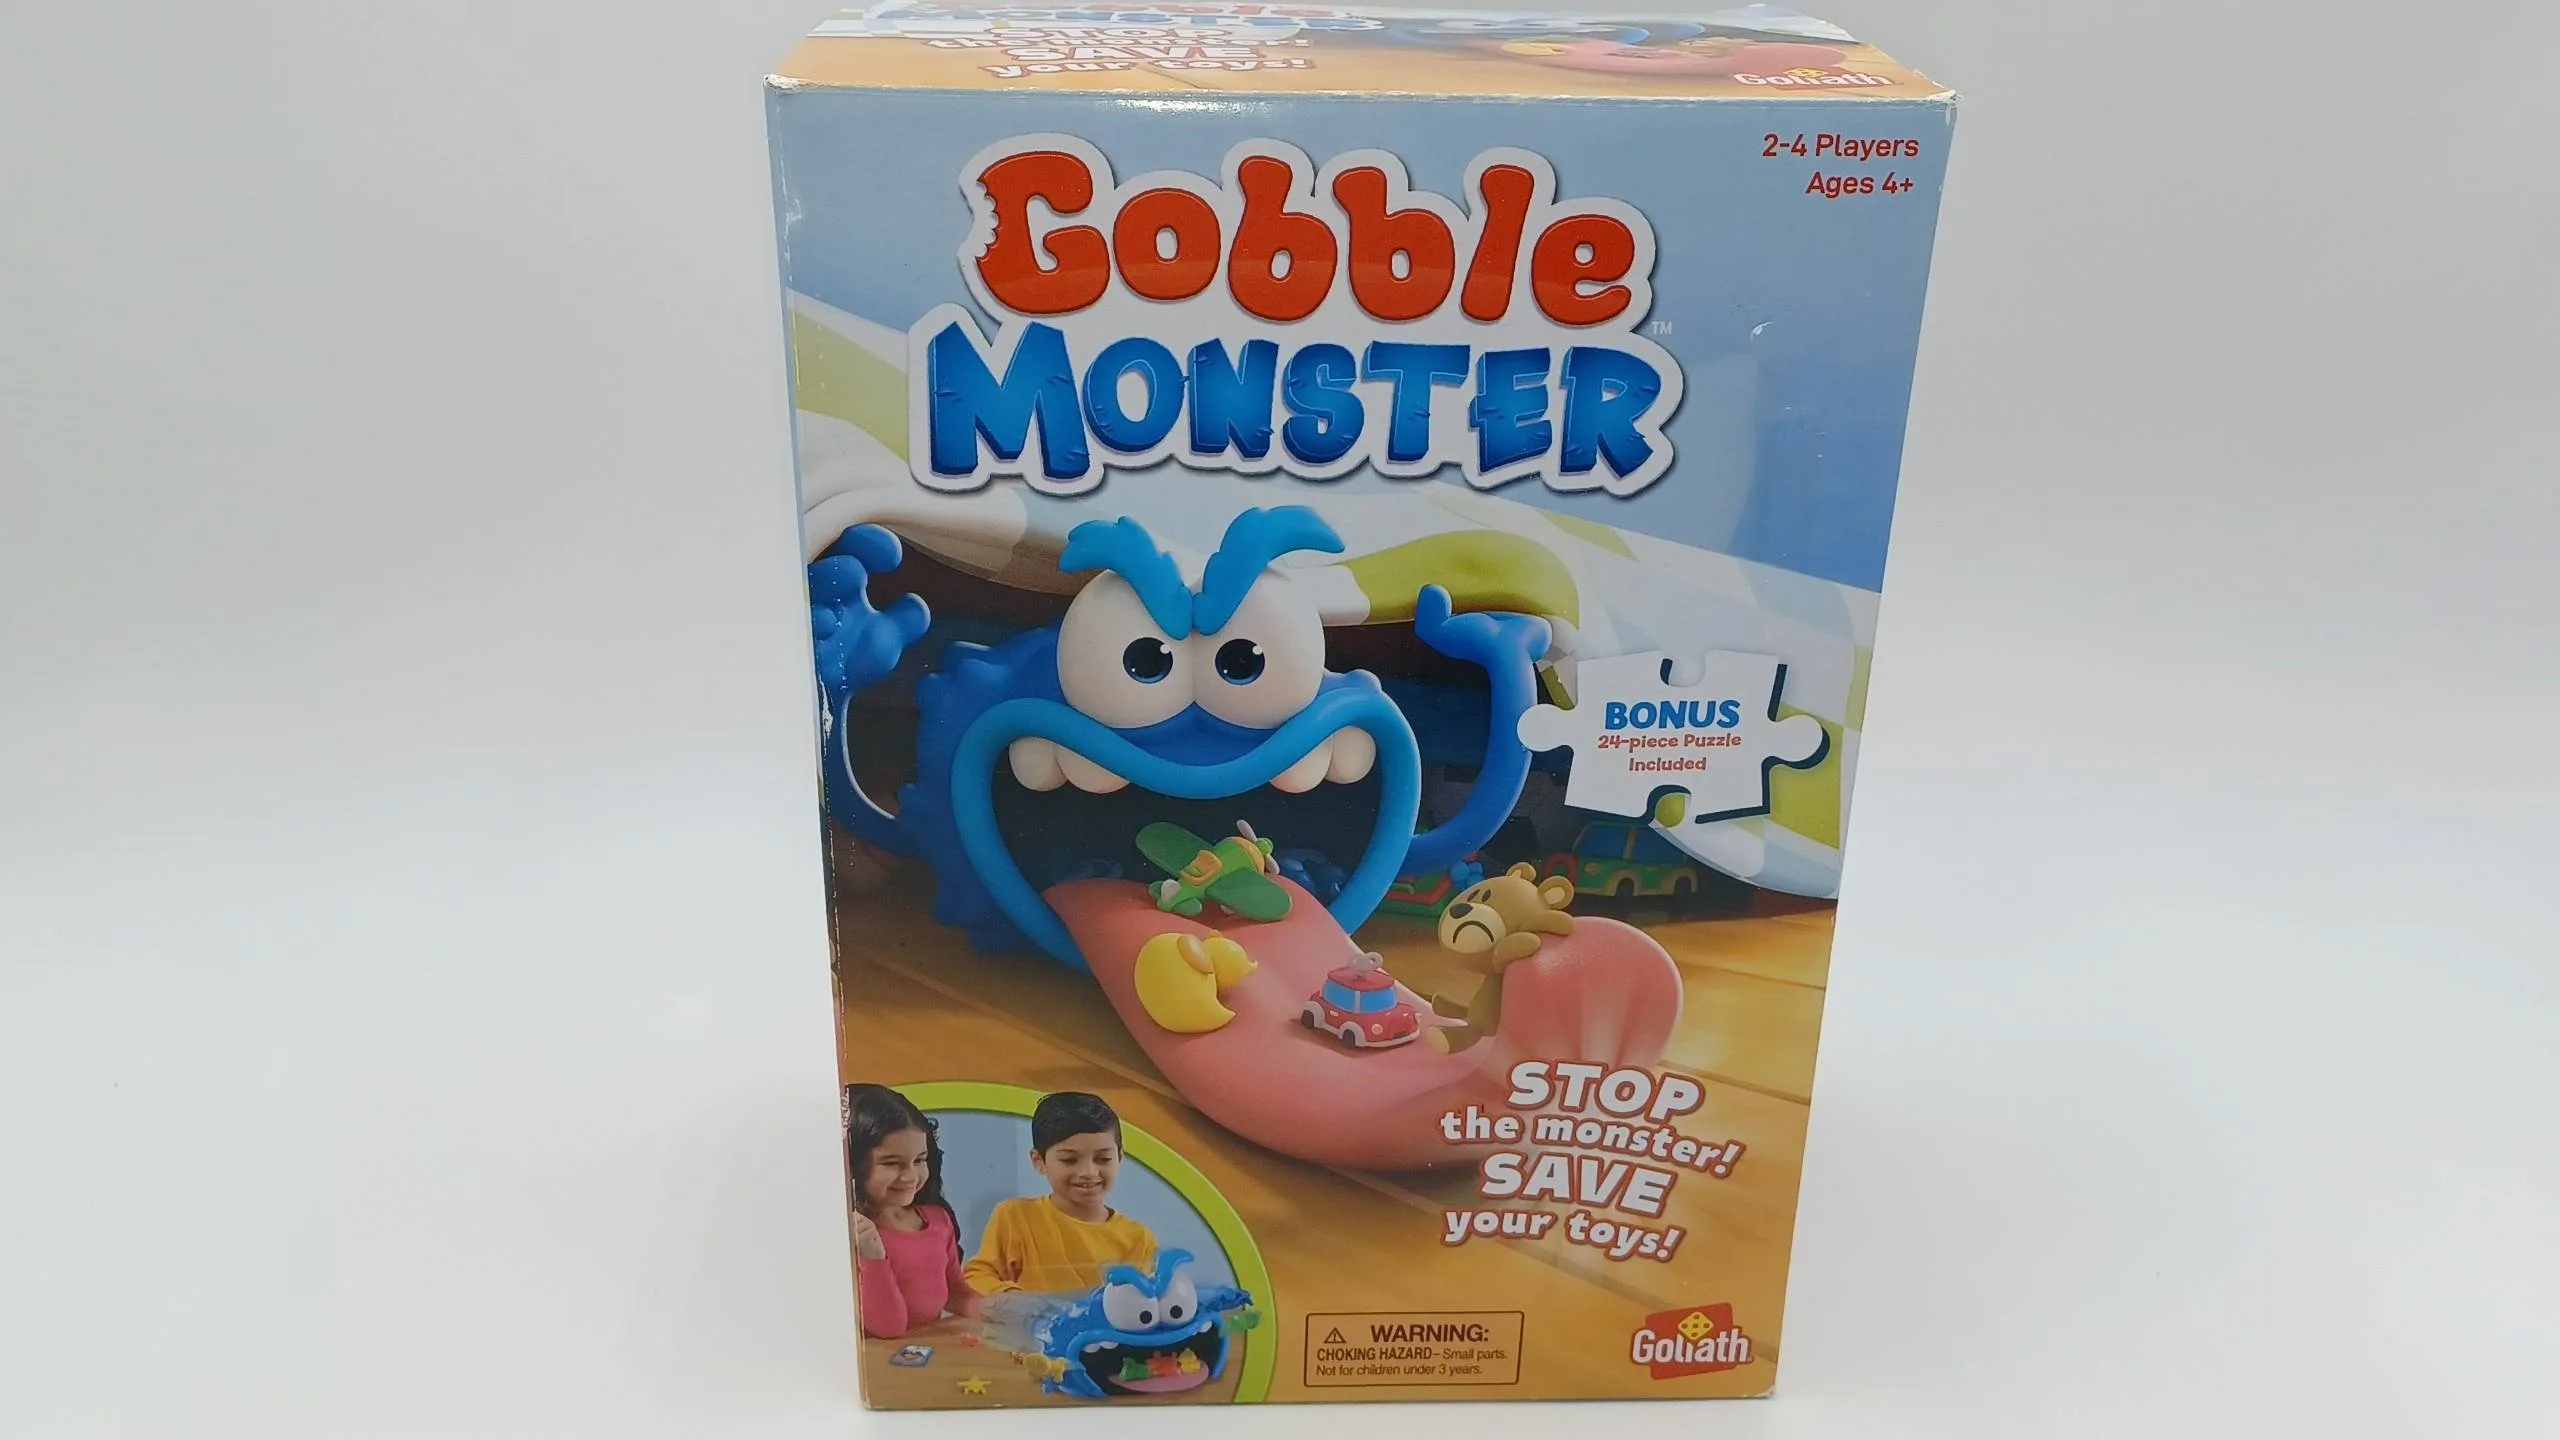 Box for Gobble Monster